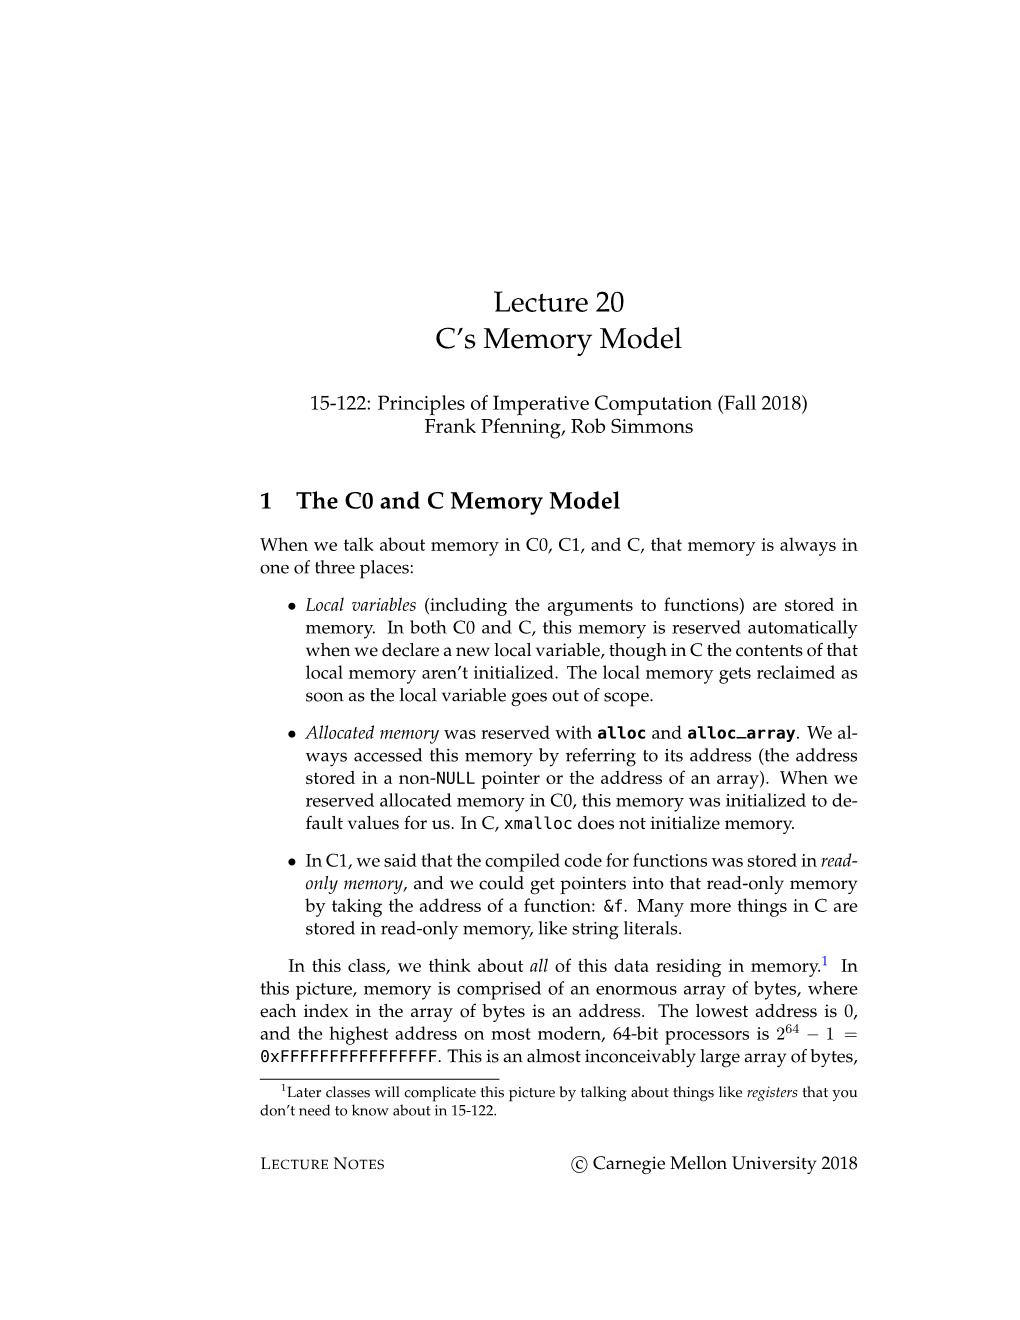 C's Memory Model